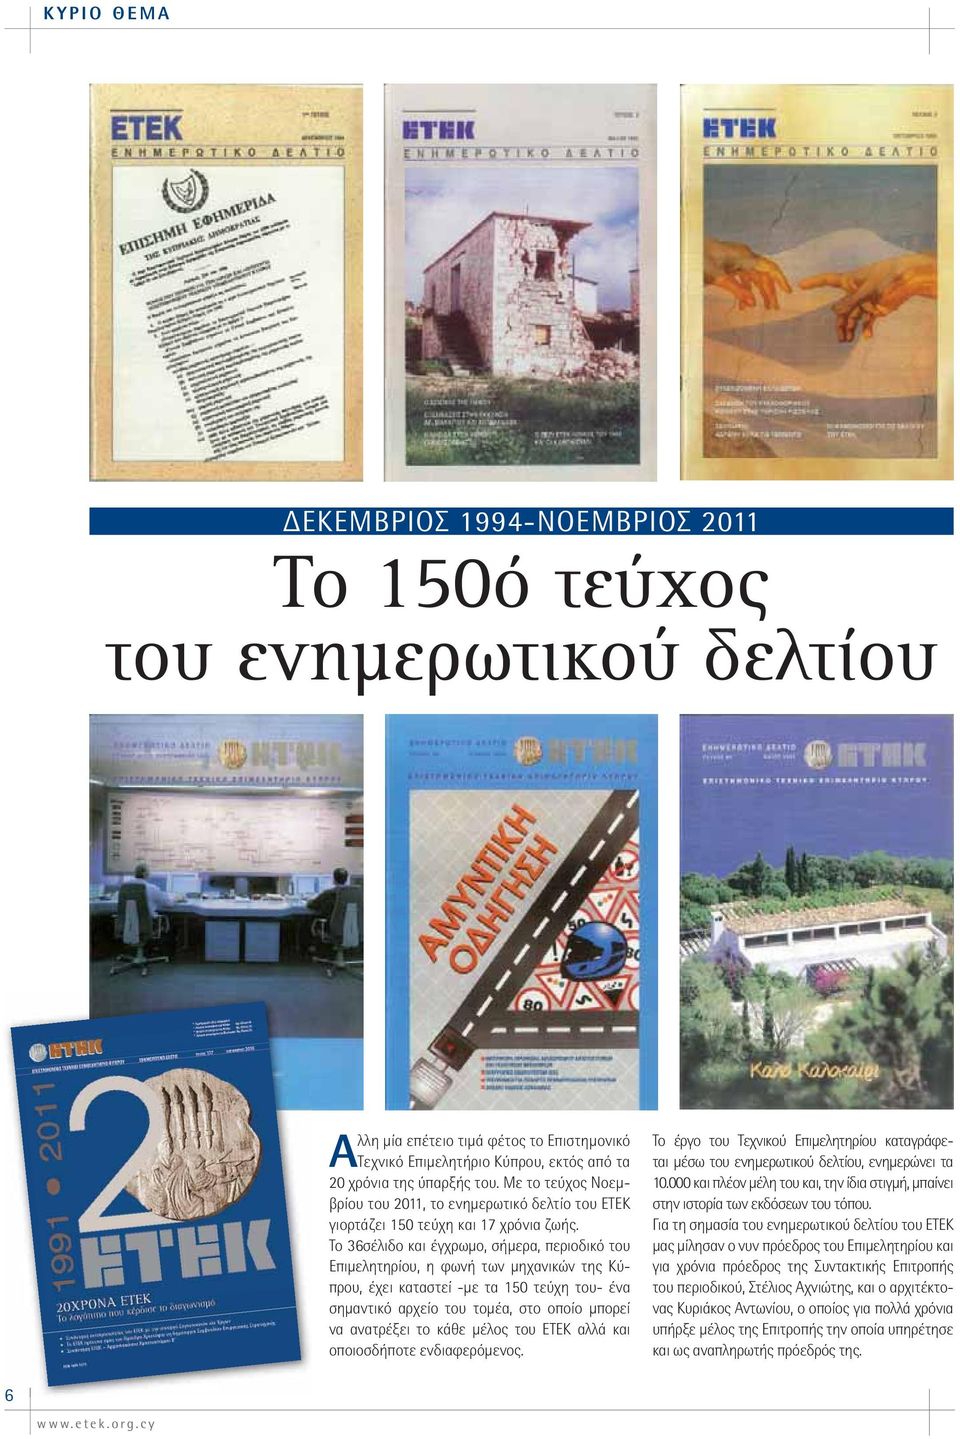 Το 36σέλιδο και έγχρωμο, σήμερα, περιοδικό του Επιμελητηρίου, η φωνή των μηχανικών της Κύπρου, έχει καταστεί -με τα 150 τεύχη του- ένα σημαντικό αρχείο του τομέα, στο οποίο μπορεί να ανατρέξει το